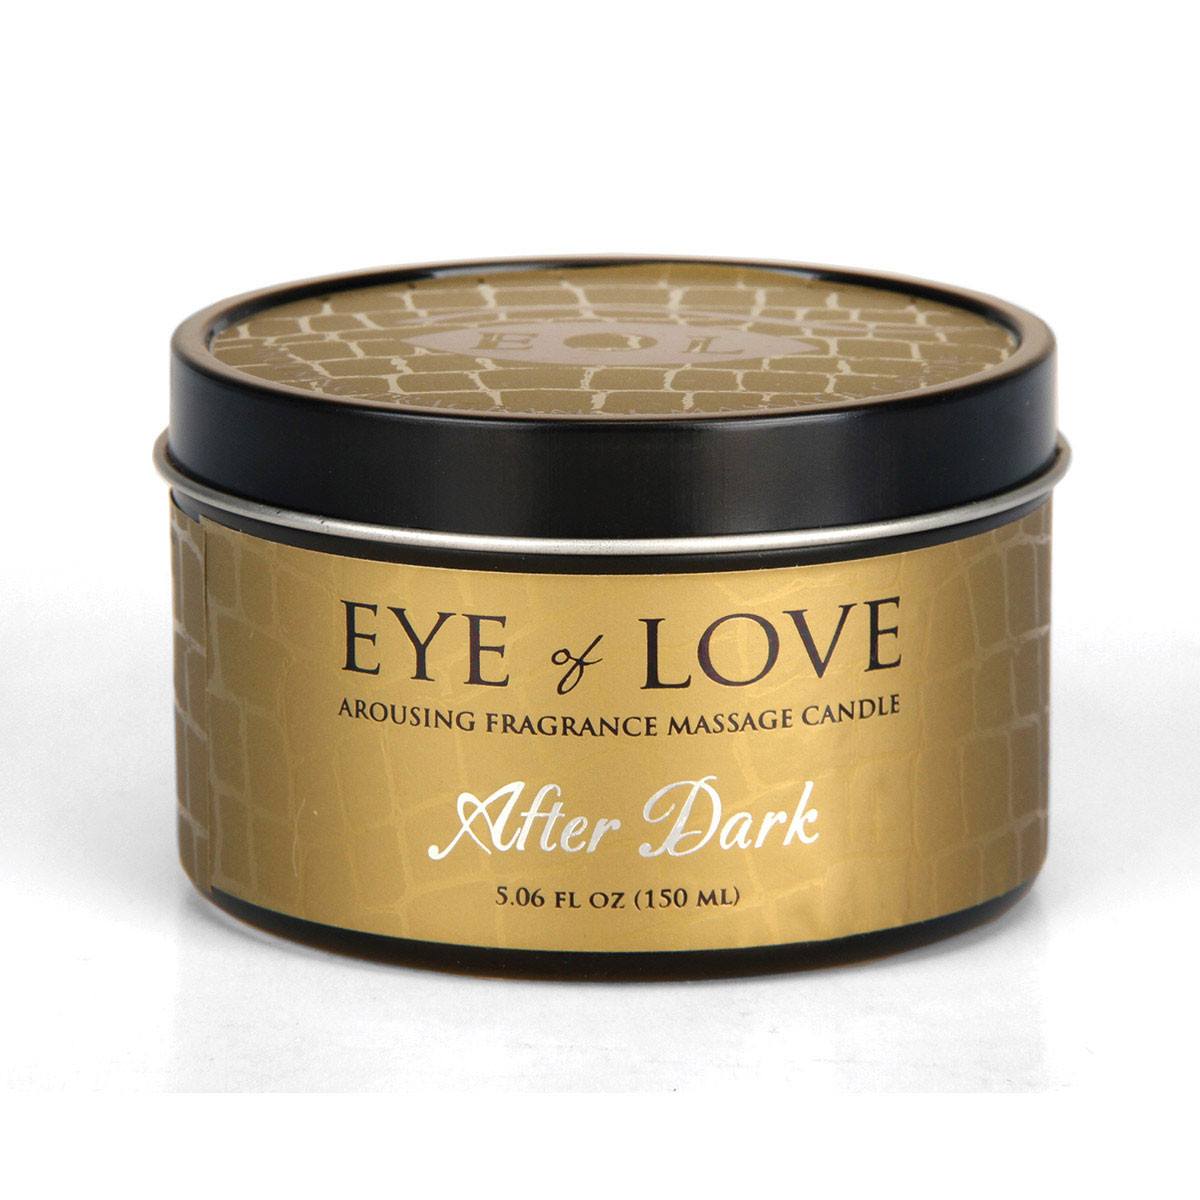 Eye of Love Pheromone Massage Candle - Hamilton Park Electronics